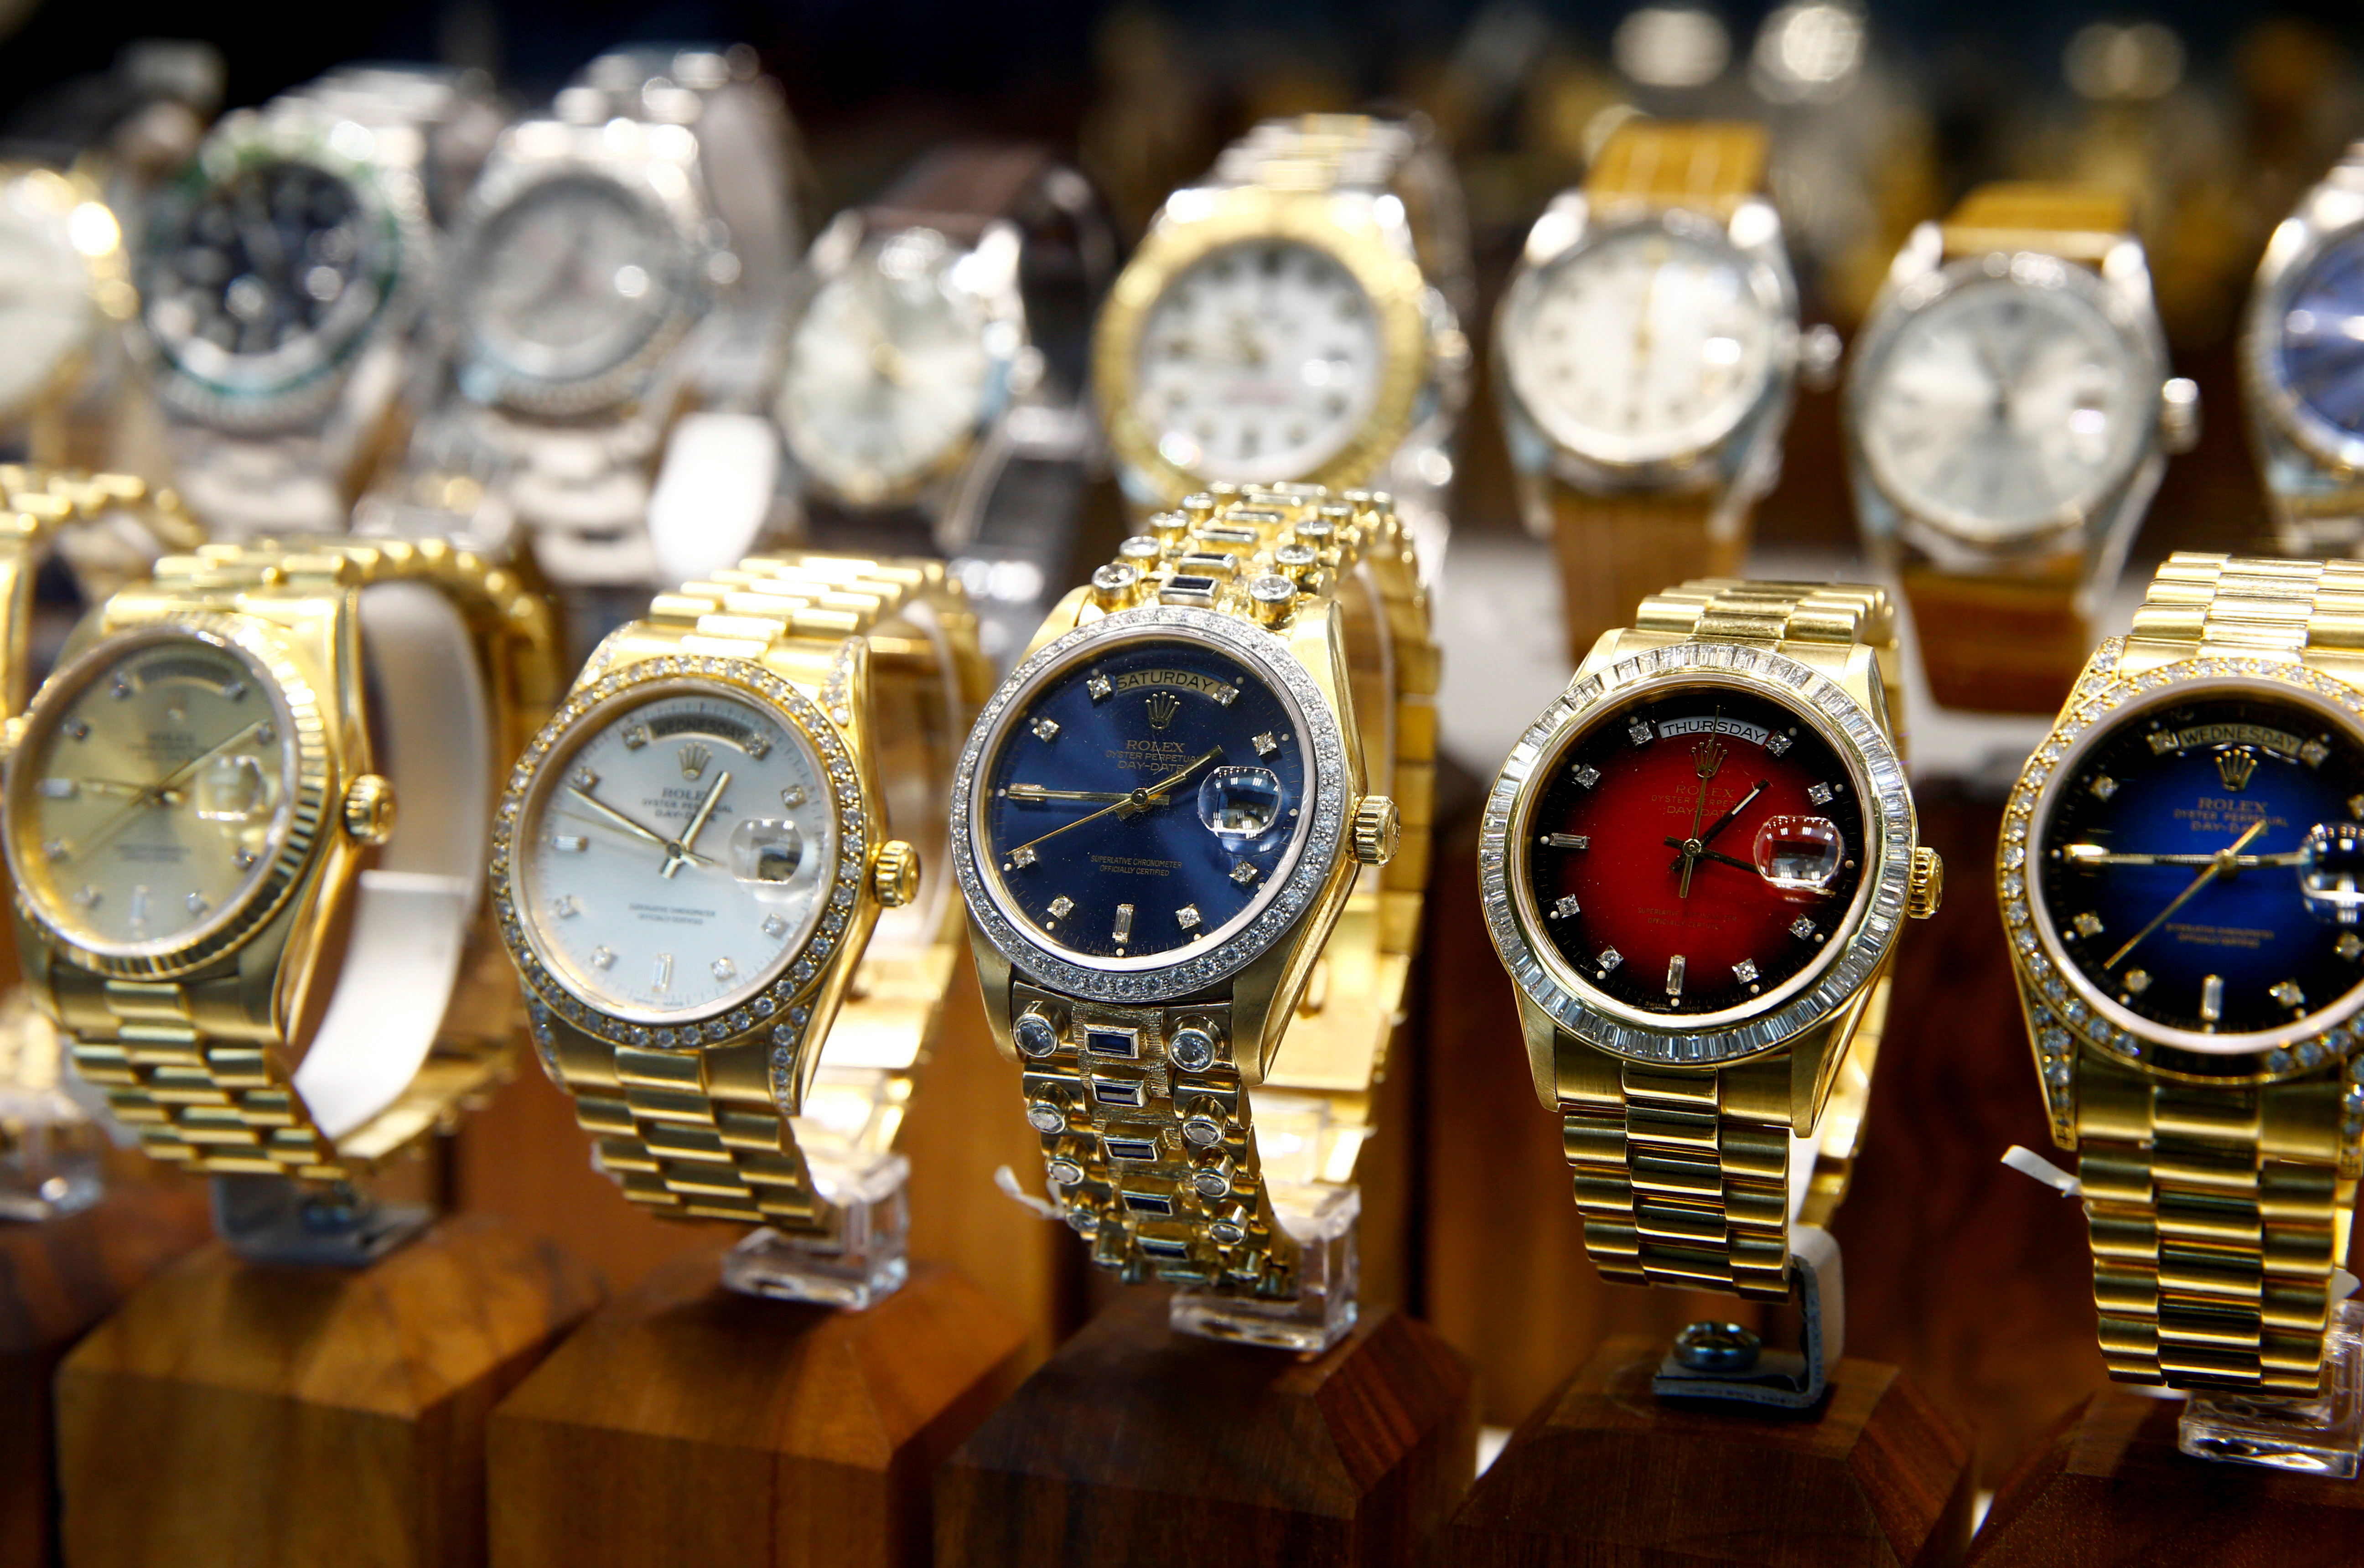 Relojes usados del fabricante suizo Rolex se ven en una tienda en Zúrich, Suiza, el 8 de julio de 2021.  REUTERS/Arnd Wiegmann